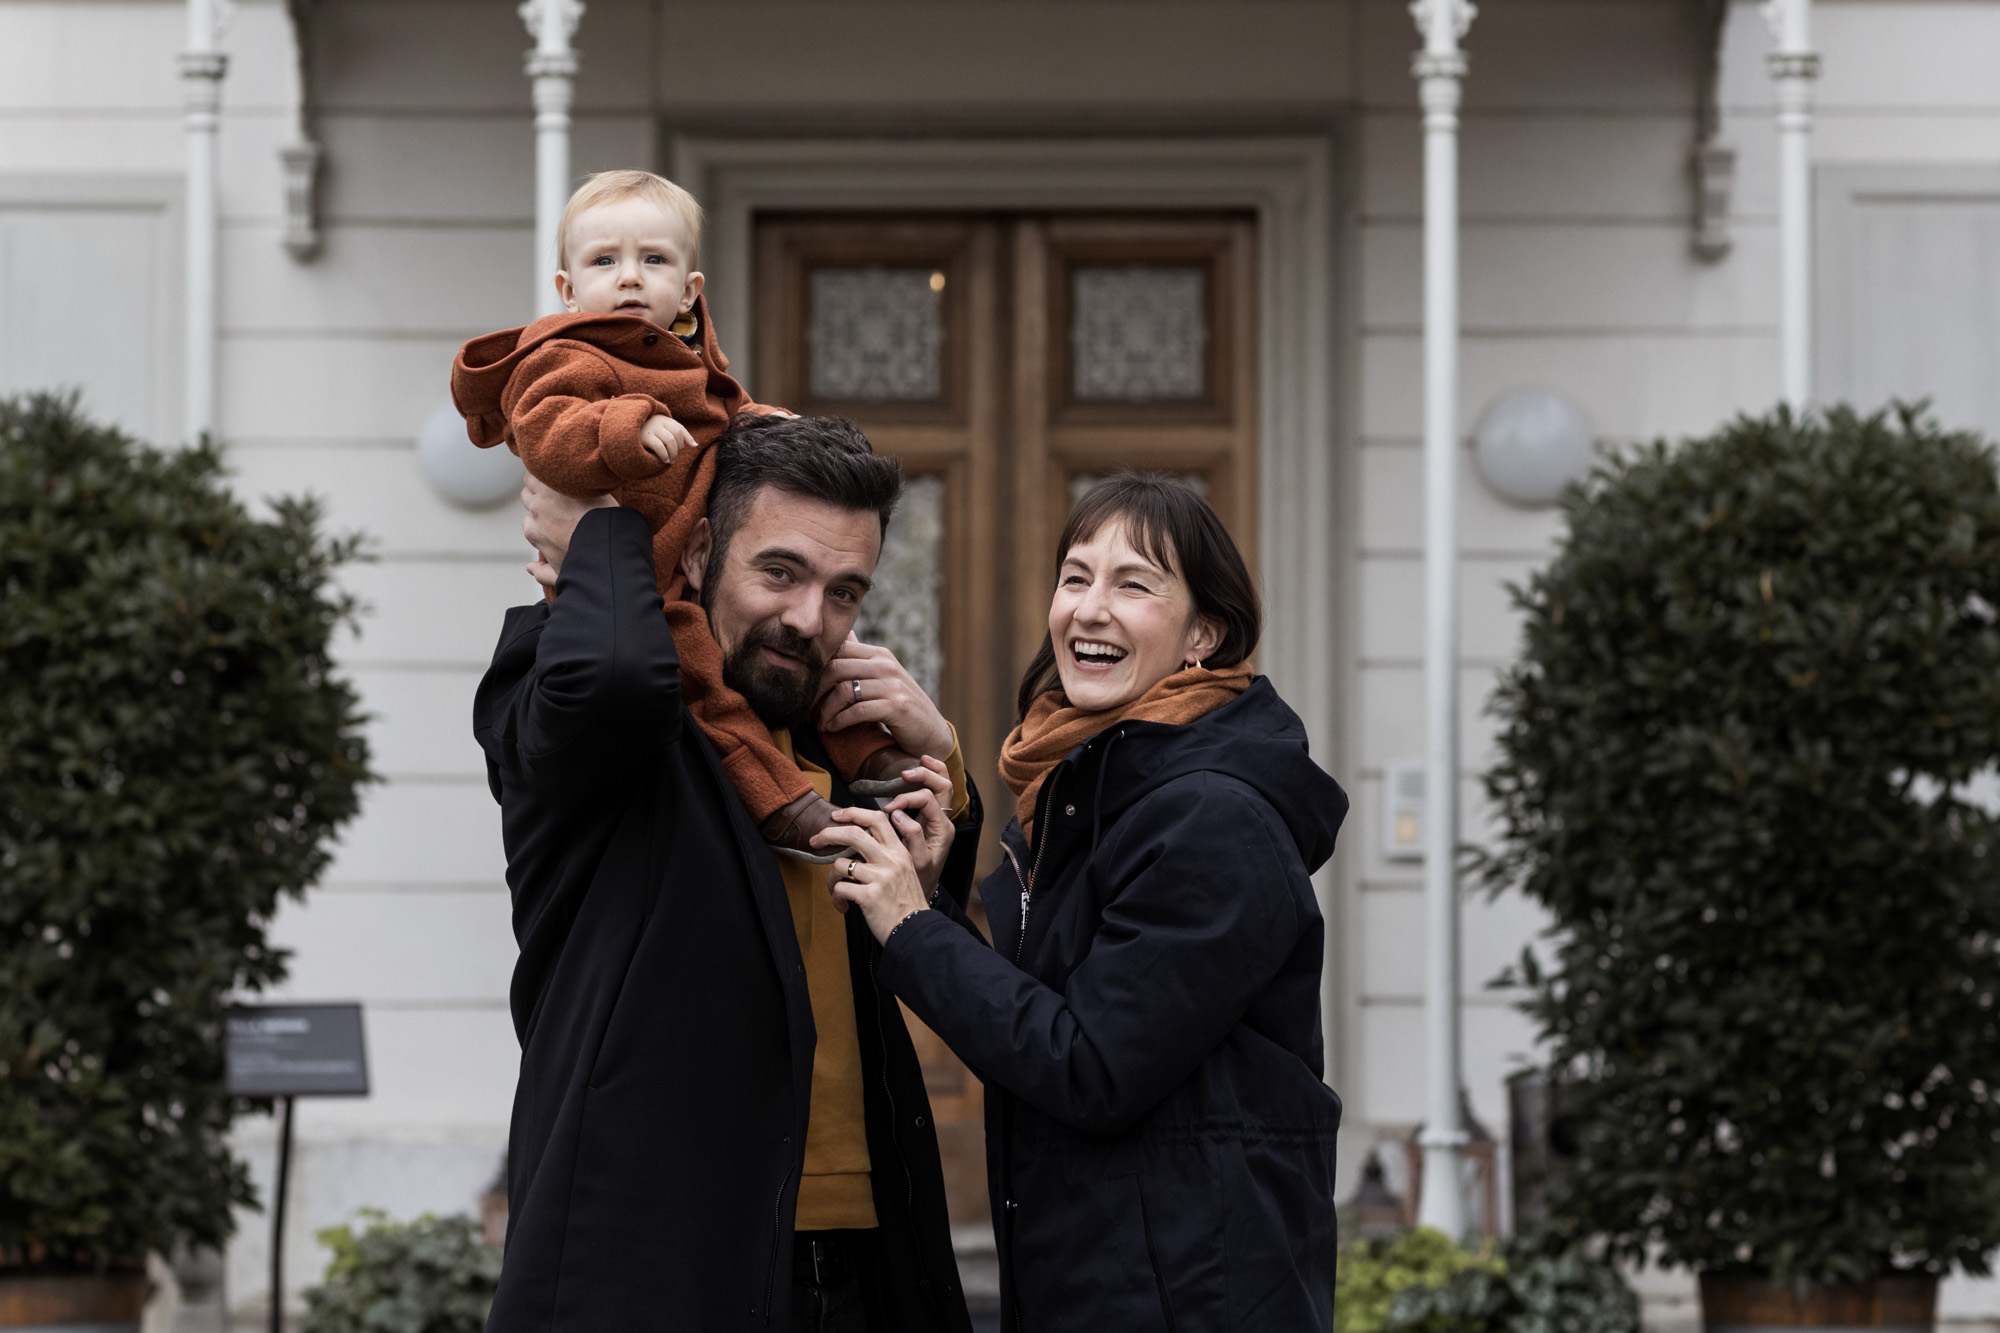 Familienbild vor der Villa - Die glückliche Familie beim Fotoshooting